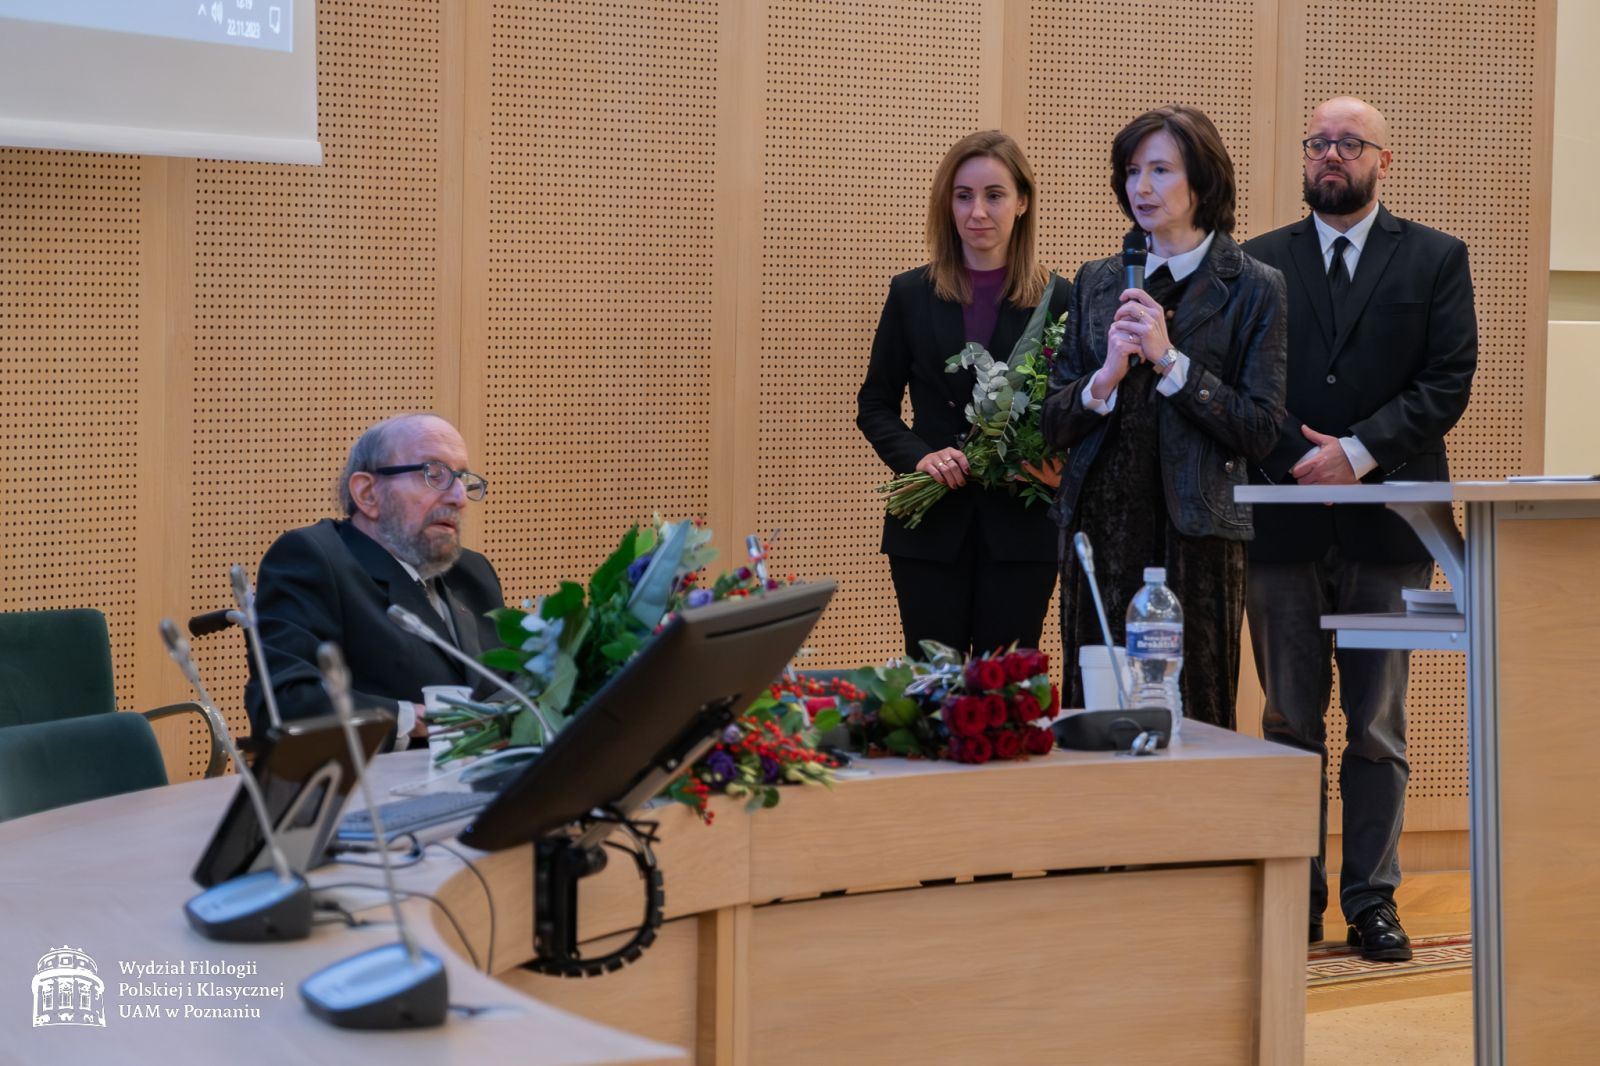 Dyrekcja IFP składa życzenia jubilatowi - przy mikrofonie stoi prof. Elżbieta Winiecka, za nią dr Sylwia Karolak z bukietem kwiatów w rękach, jeszcze dalej prof. Marek Osiewicz.